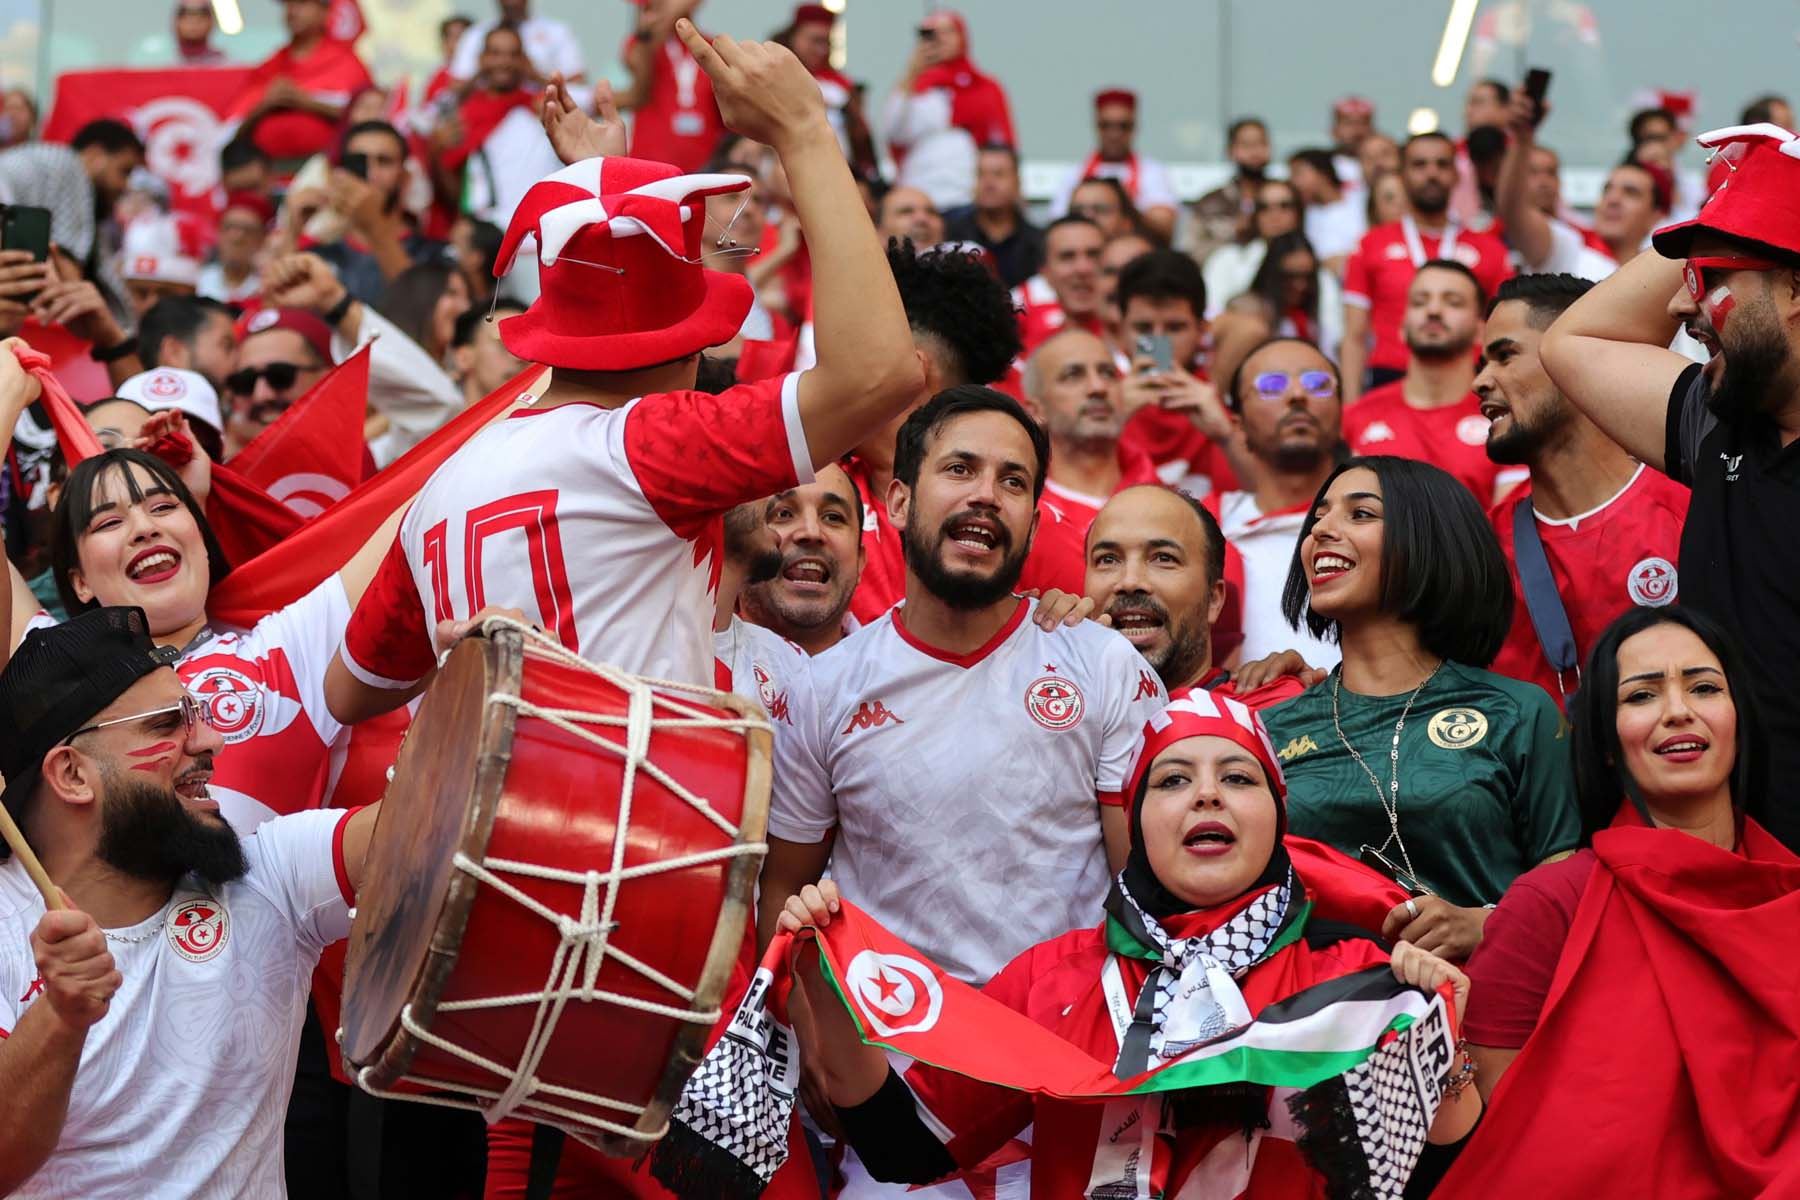 Aficionados de Túnez animan antes del partido de fútbol del grupo D de la Copa Mundial de la FIFA 2022 entre Dinamarca y Túnez en el Education City Stadium de Doha, Catar. Foto: AFP